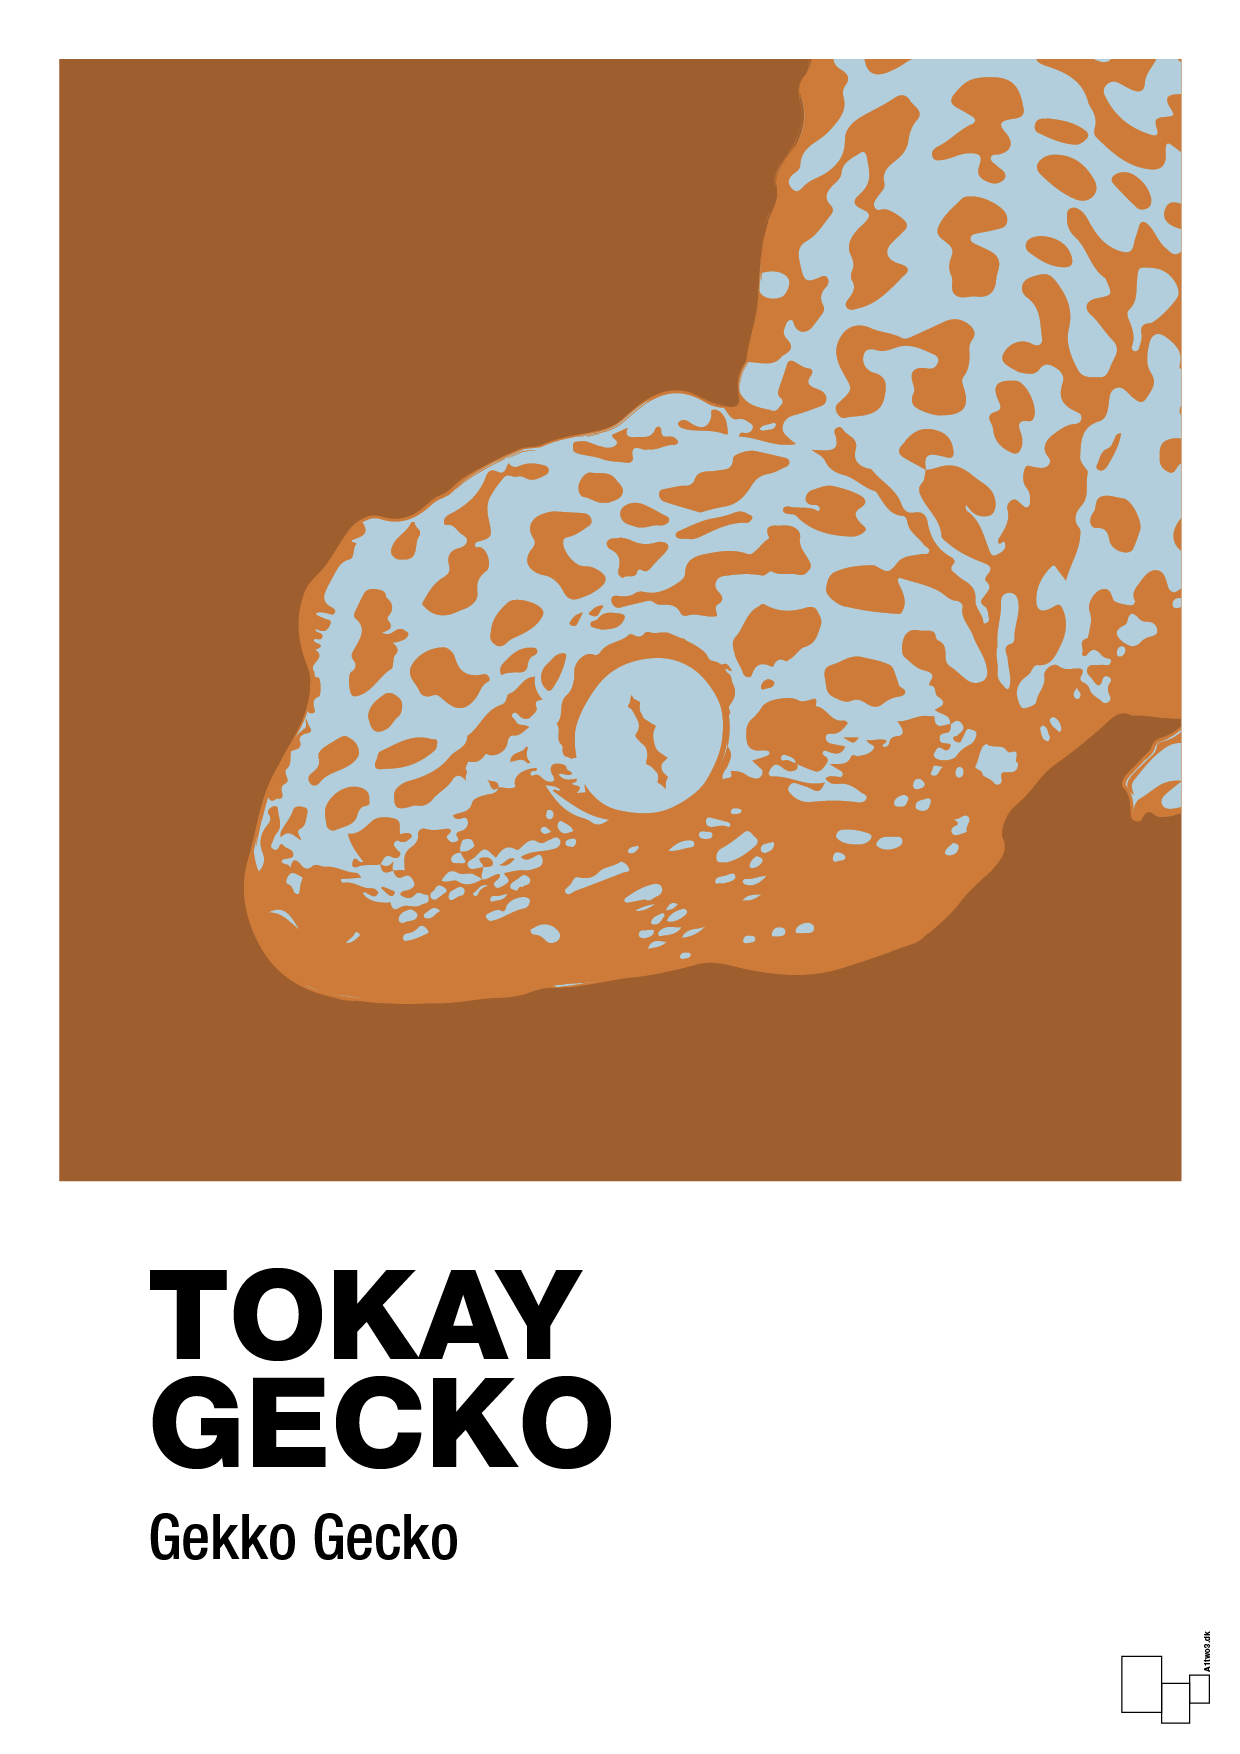 tokay gecko - Plakat med Videnskab i Cognac